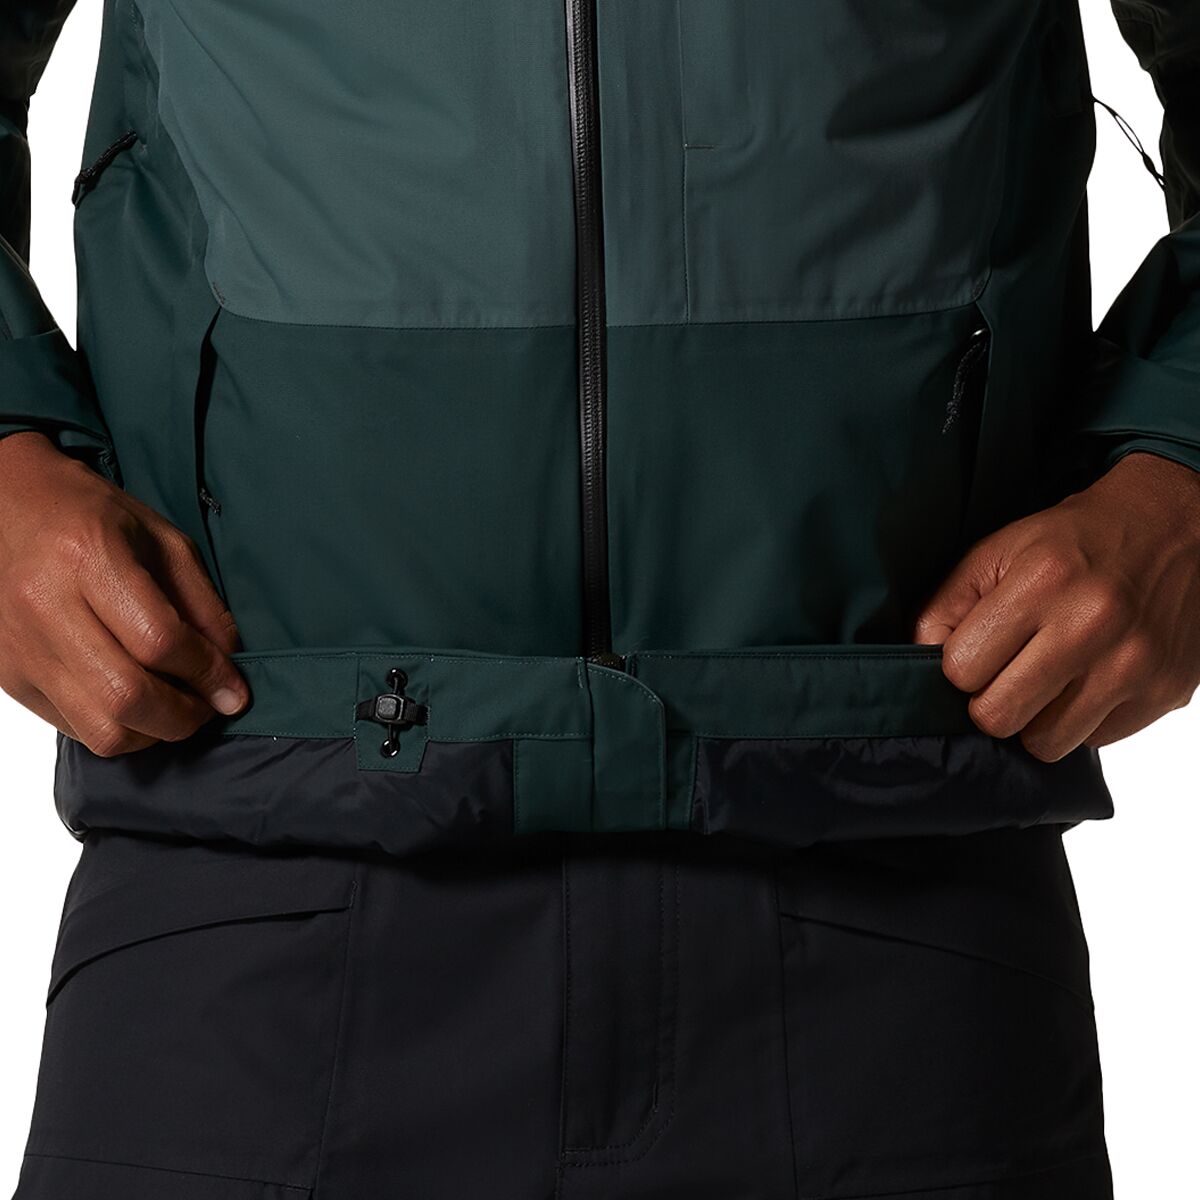  Mountain Hardwear Firefall 2 Insulated Jacket - Men